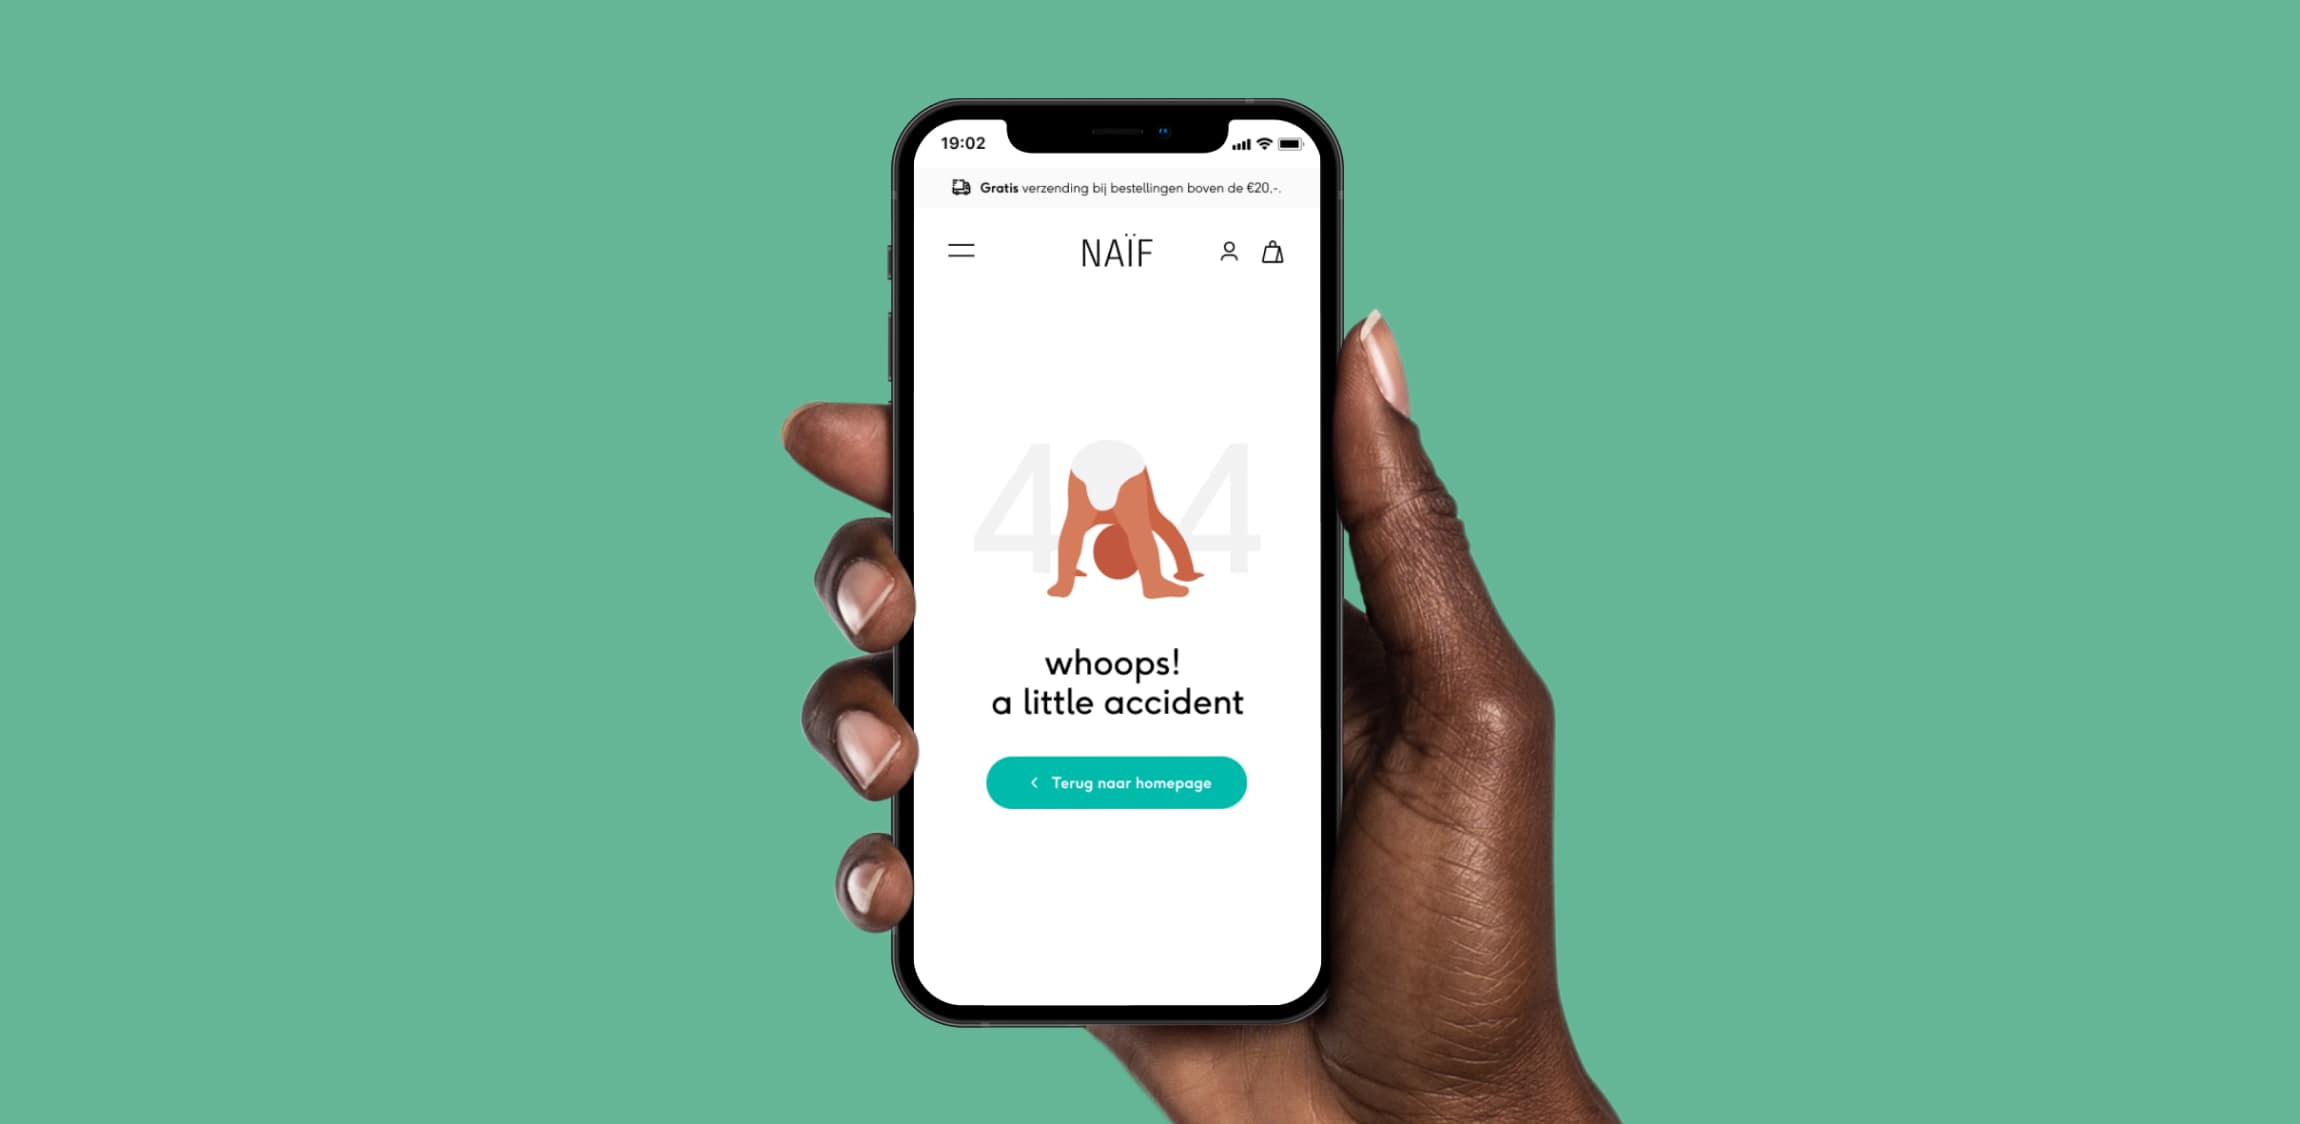 De 404 pagina voor Naïf getoond op een mobiel device. 